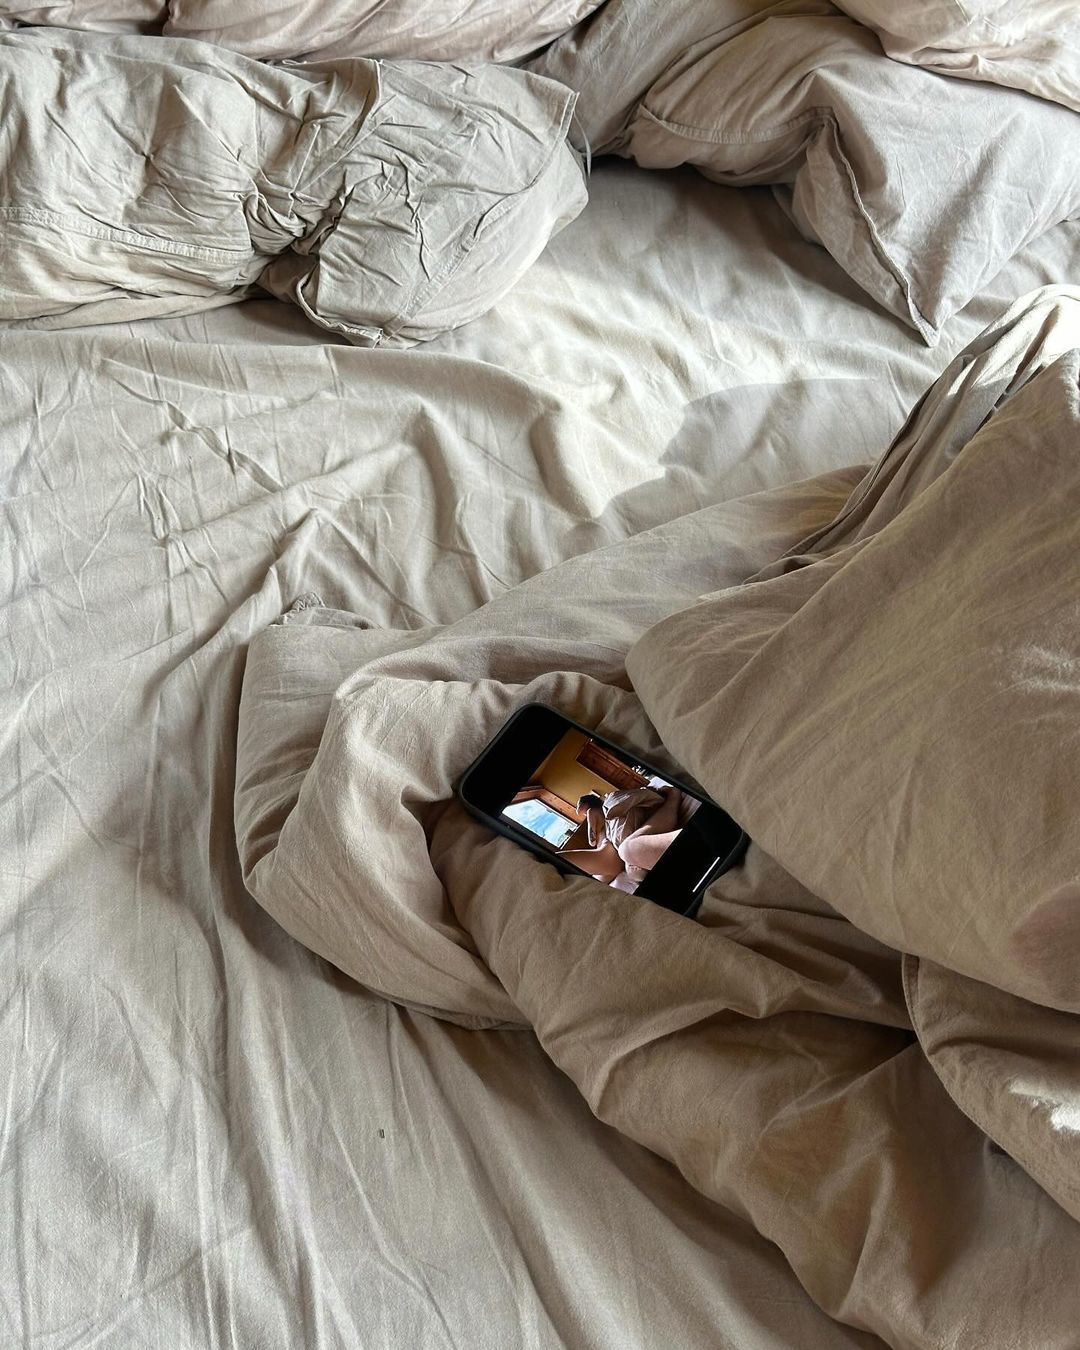 Надя Дорофеева поразила своих поклонников, опубликовав фото топлес в постели. 